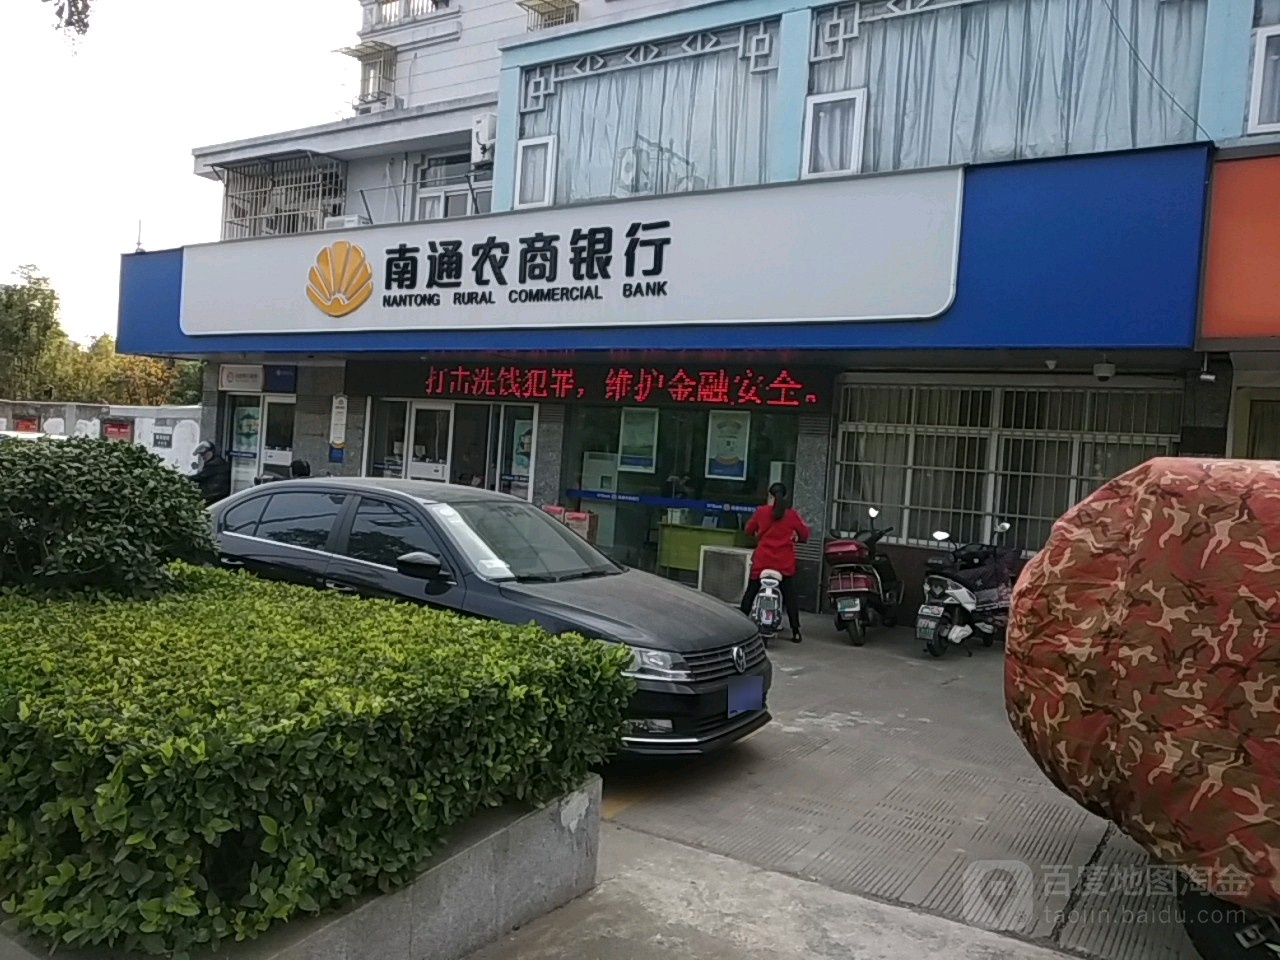 南通女农村商业银行(城南支行)